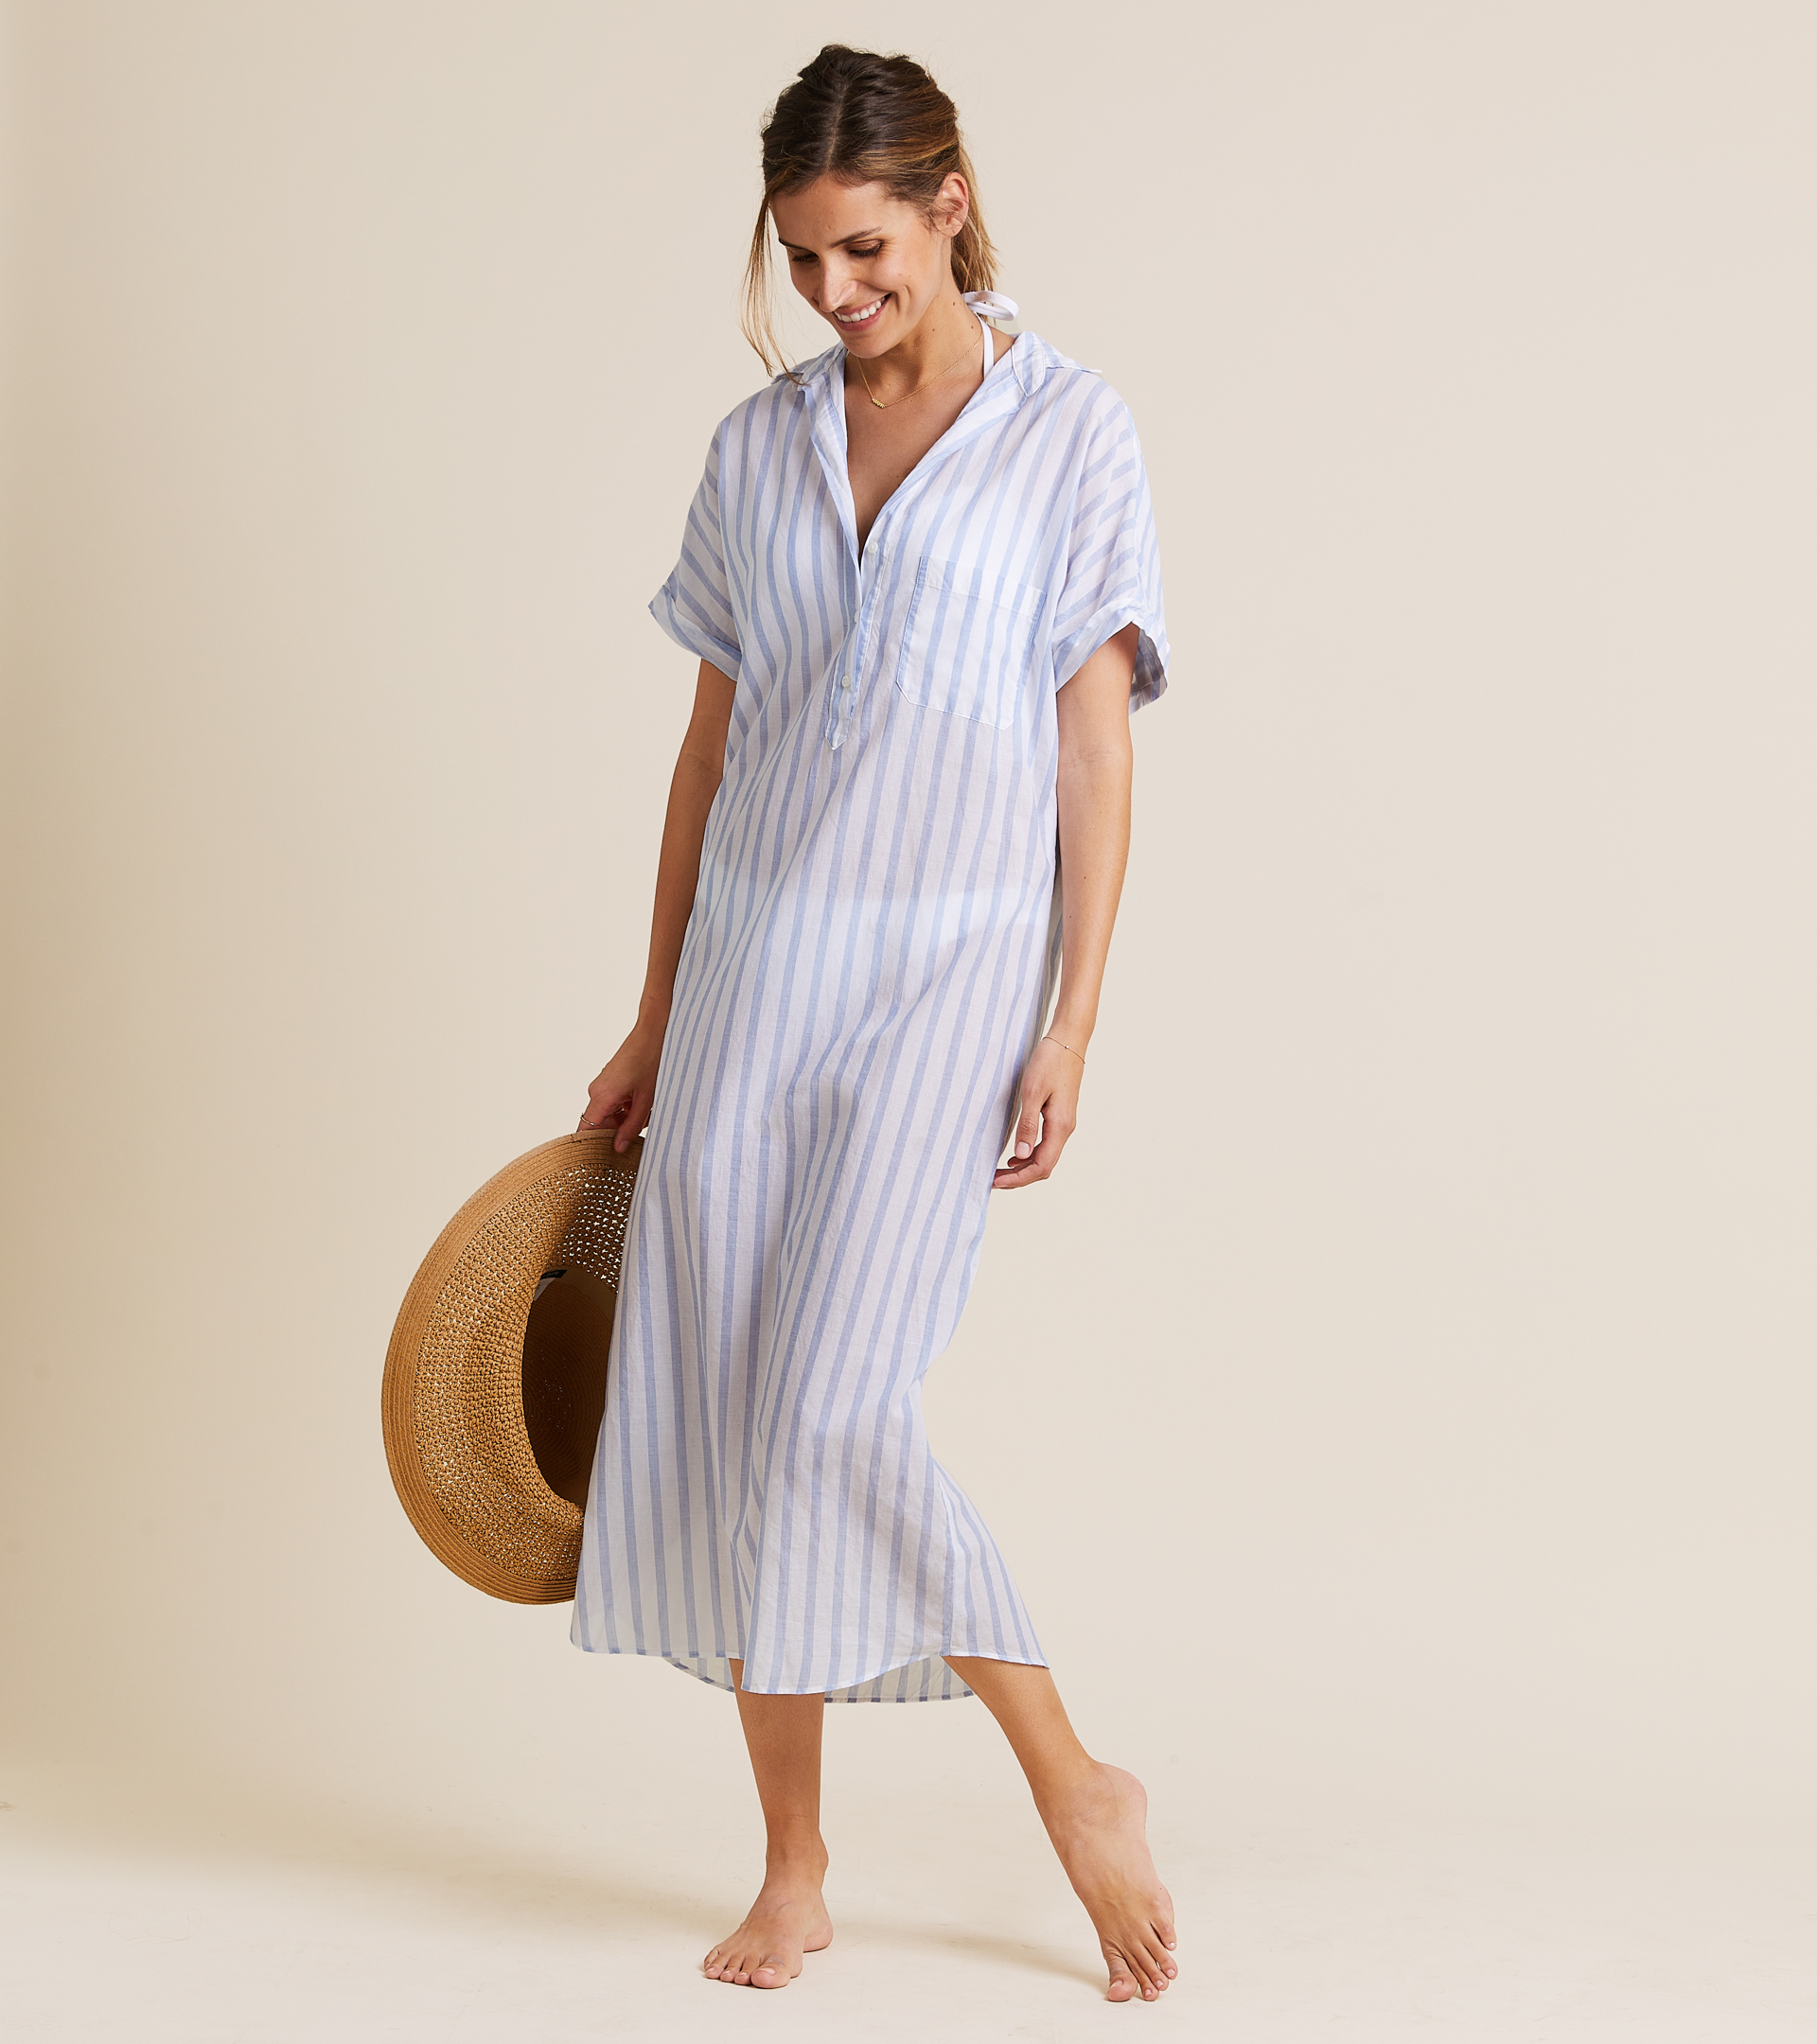 The Artist Full Length Dress Blue & White Stripe, Tumbled Linen view 2